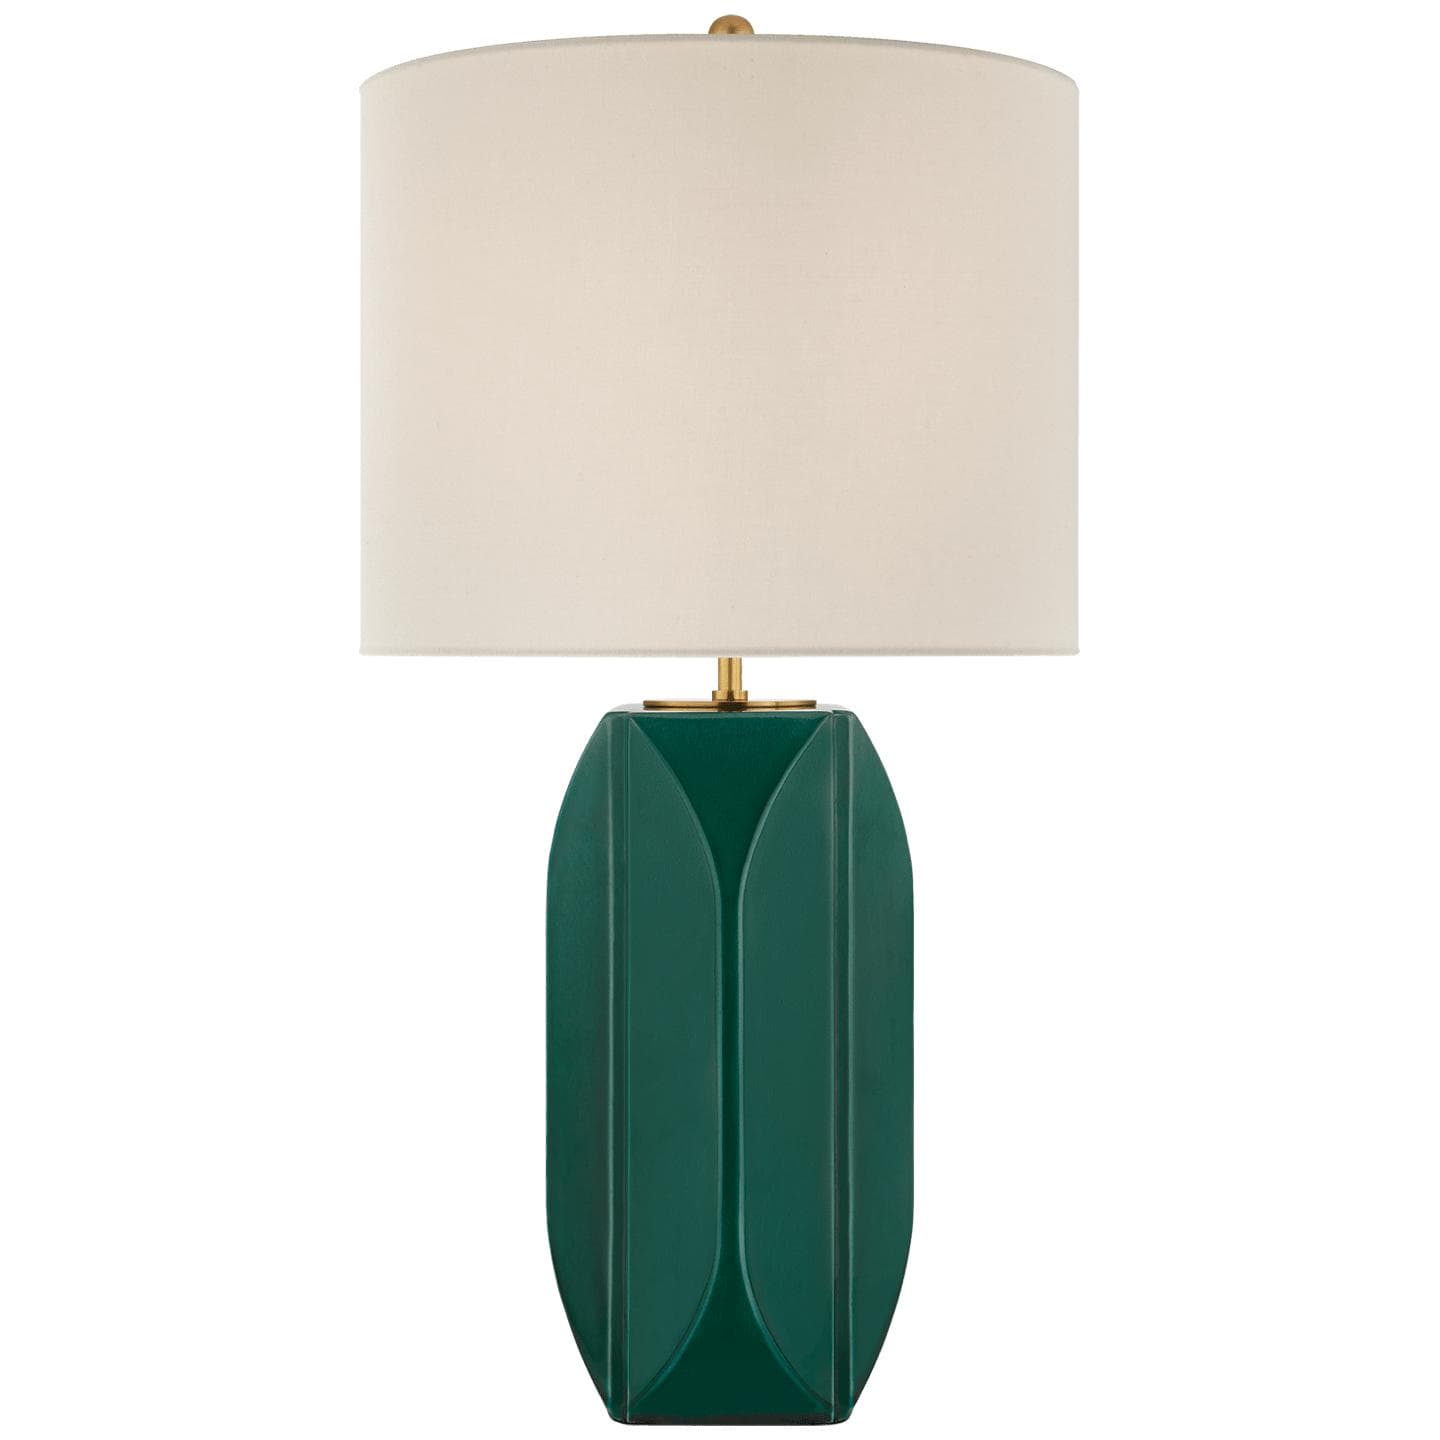 Купить Настольная лампа Carmilla Medium Table Lamp в интернет-магазине roooms.ru